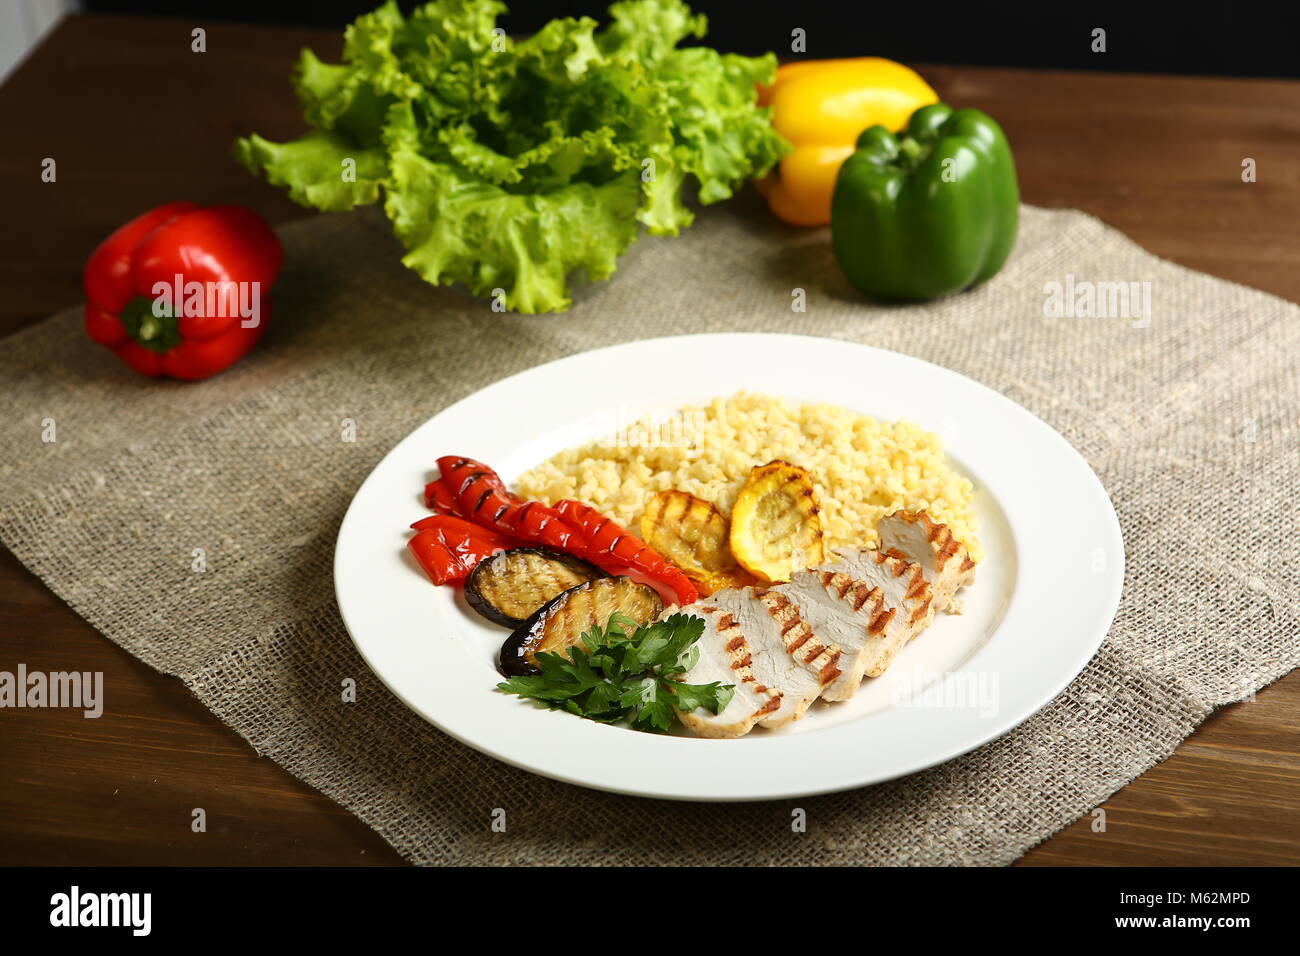 Avec des tranches de poulet grillé, avec légumes, couscous, sur une assiette blanche, décorée de persil. Dans l'arrière-plan, feuilles de laitue, la couleur du poivre. Low-ca Banque D'Images